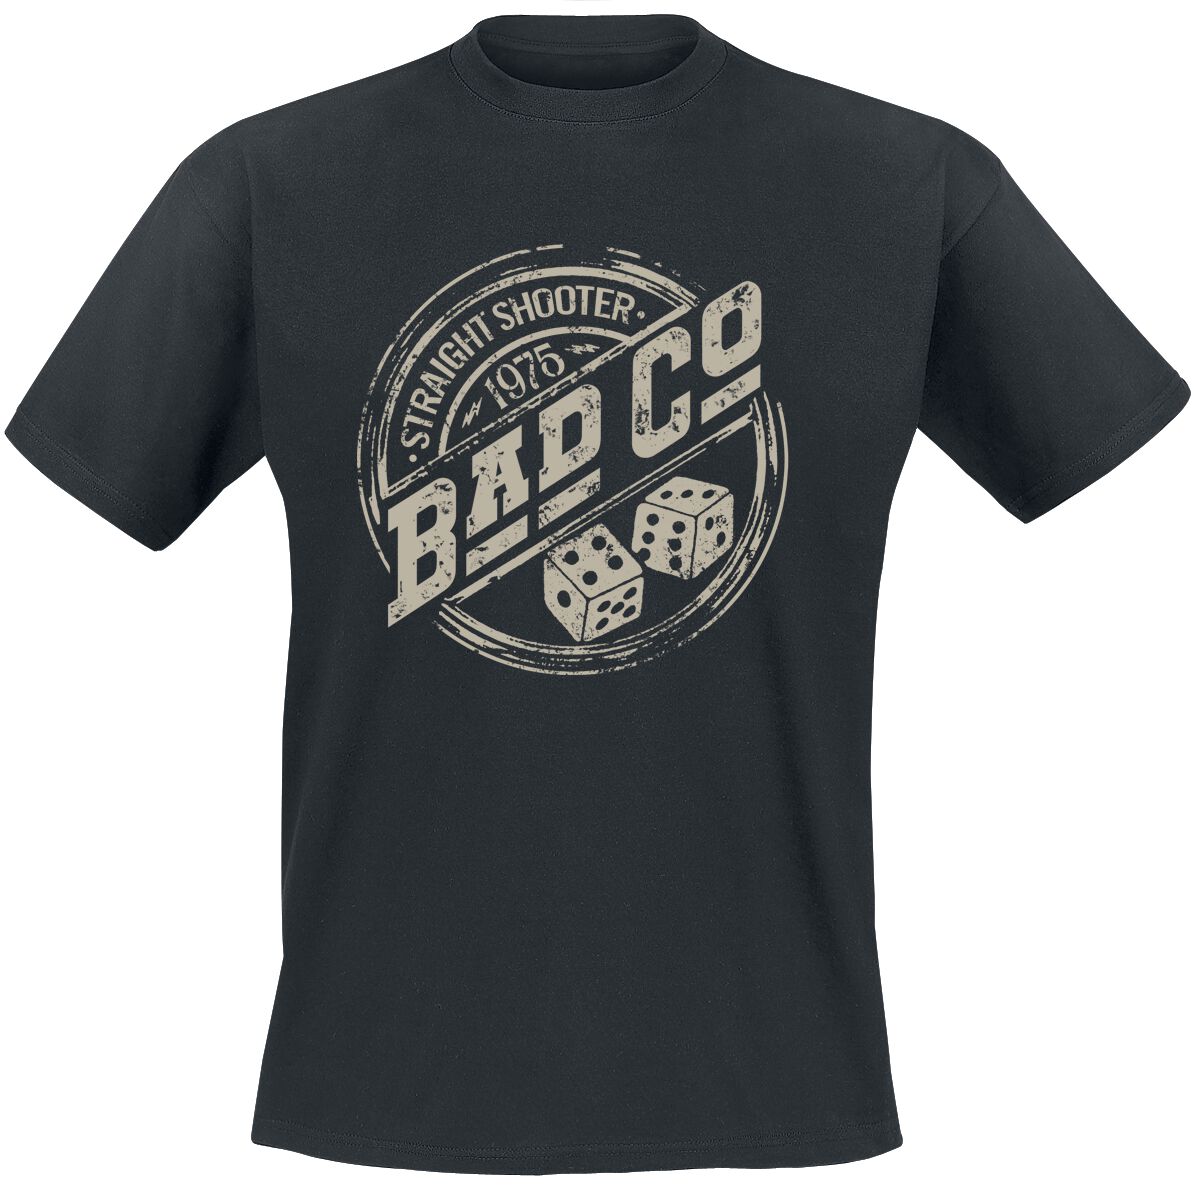 Bad Company T-Shirt - Straight Shooter - S bis XXL - für Männer - Größe XL - schwarz  - EMP exklusives Merchandise!